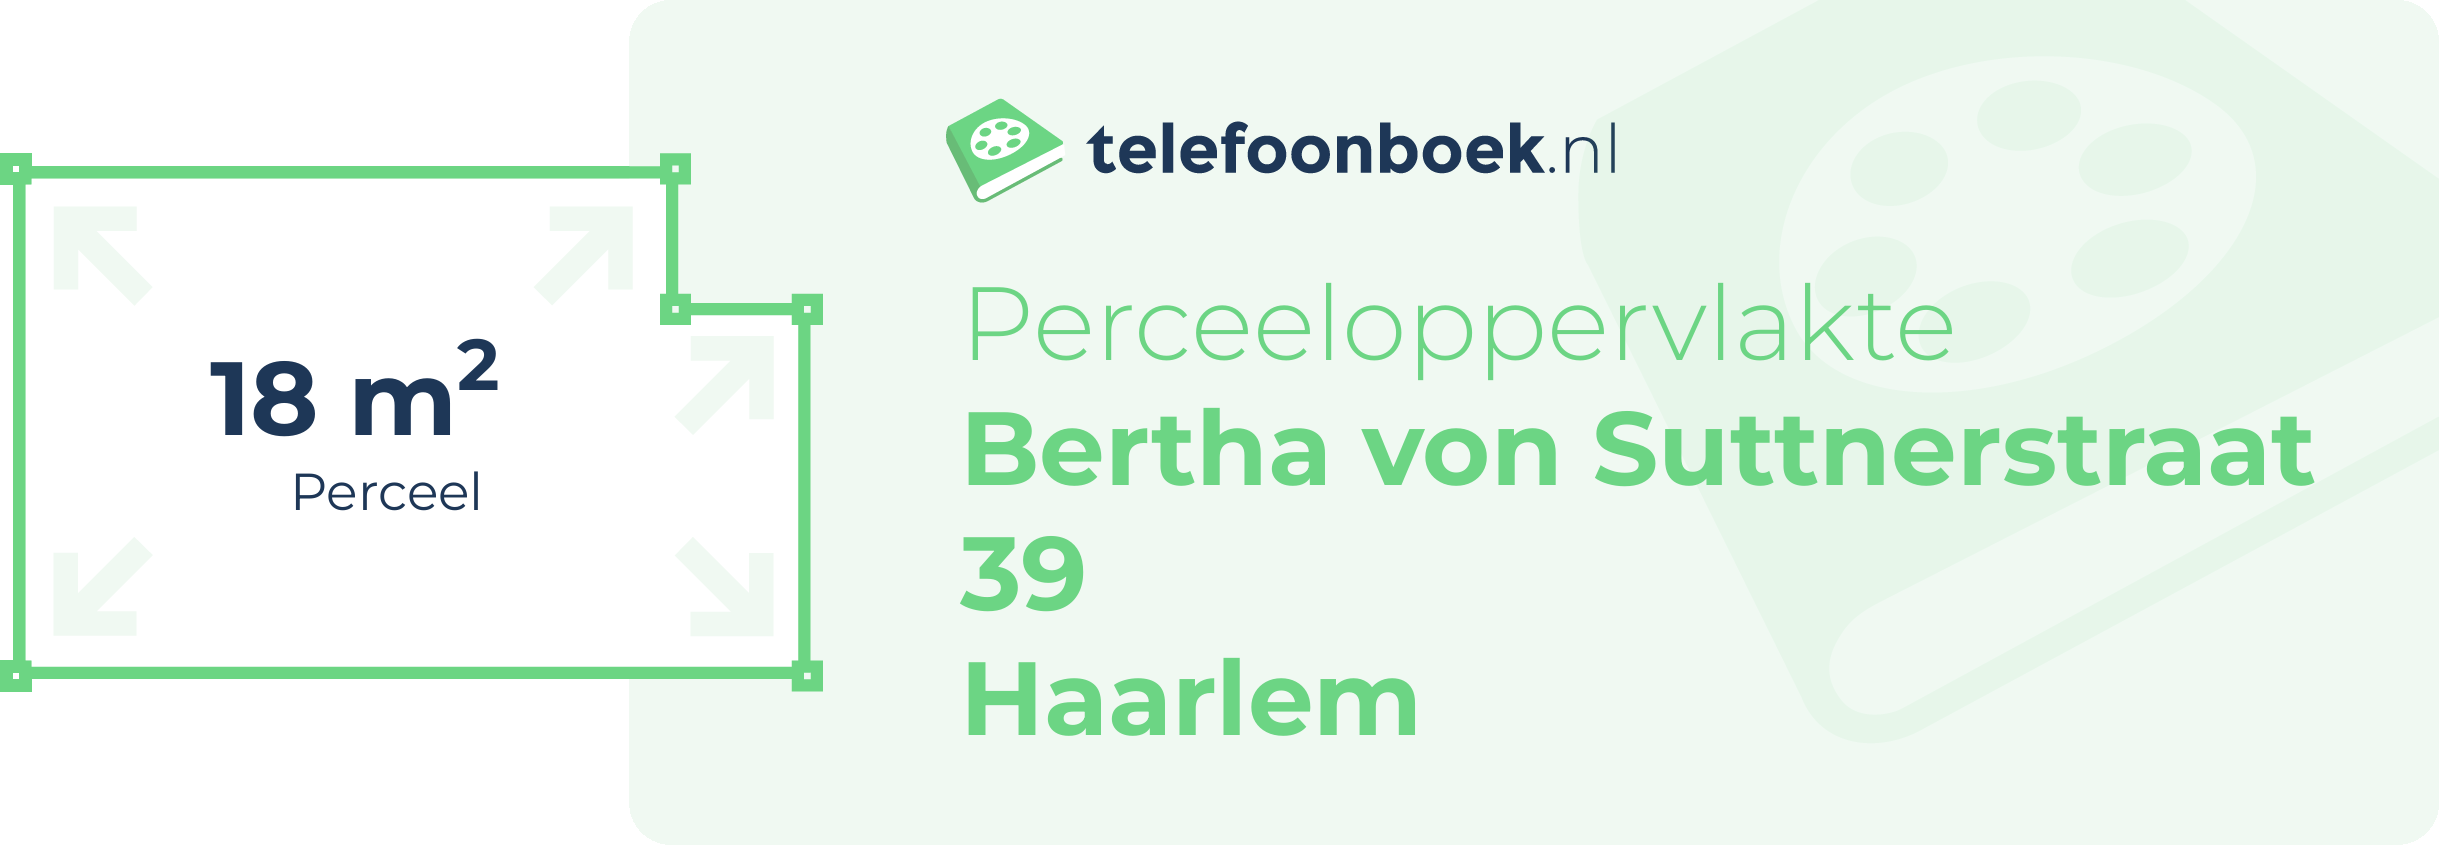 Perceeloppervlakte Bertha Von Suttnerstraat 39 Haarlem